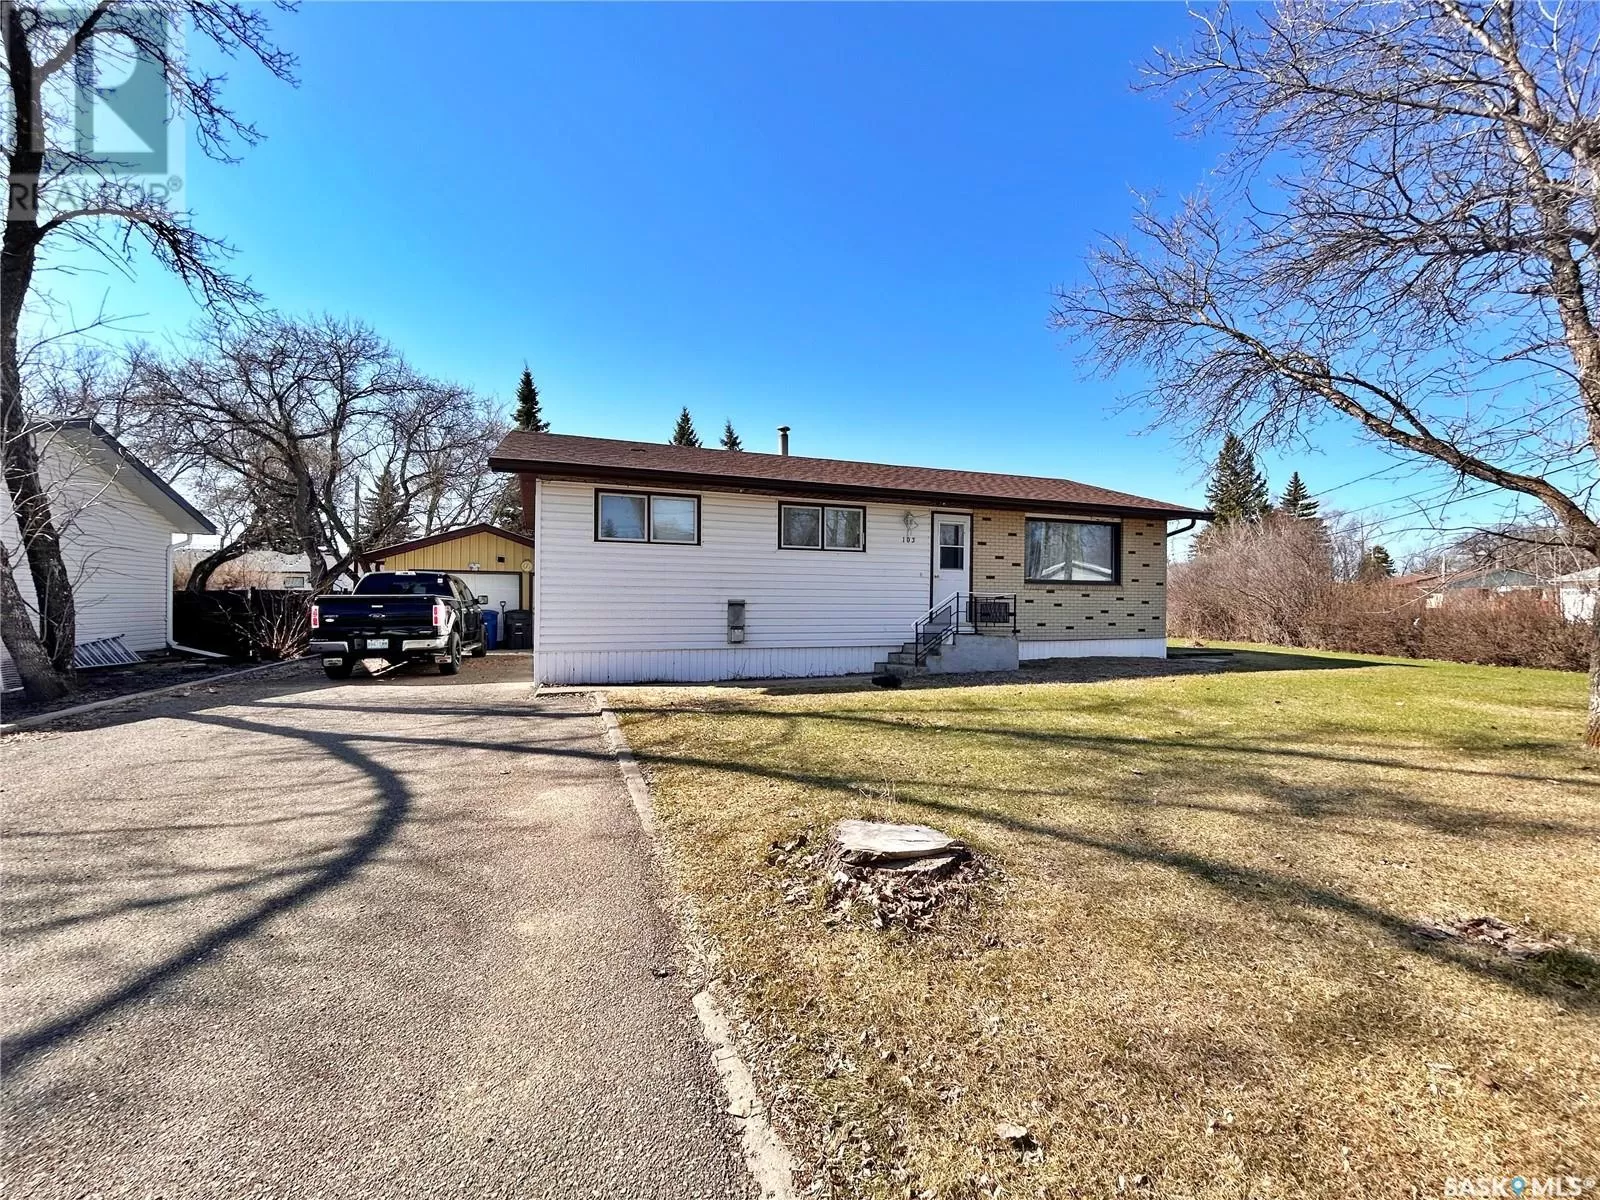 House for rent: 103 Henry Street, Moosomin, Saskatchewan S0G 3N0